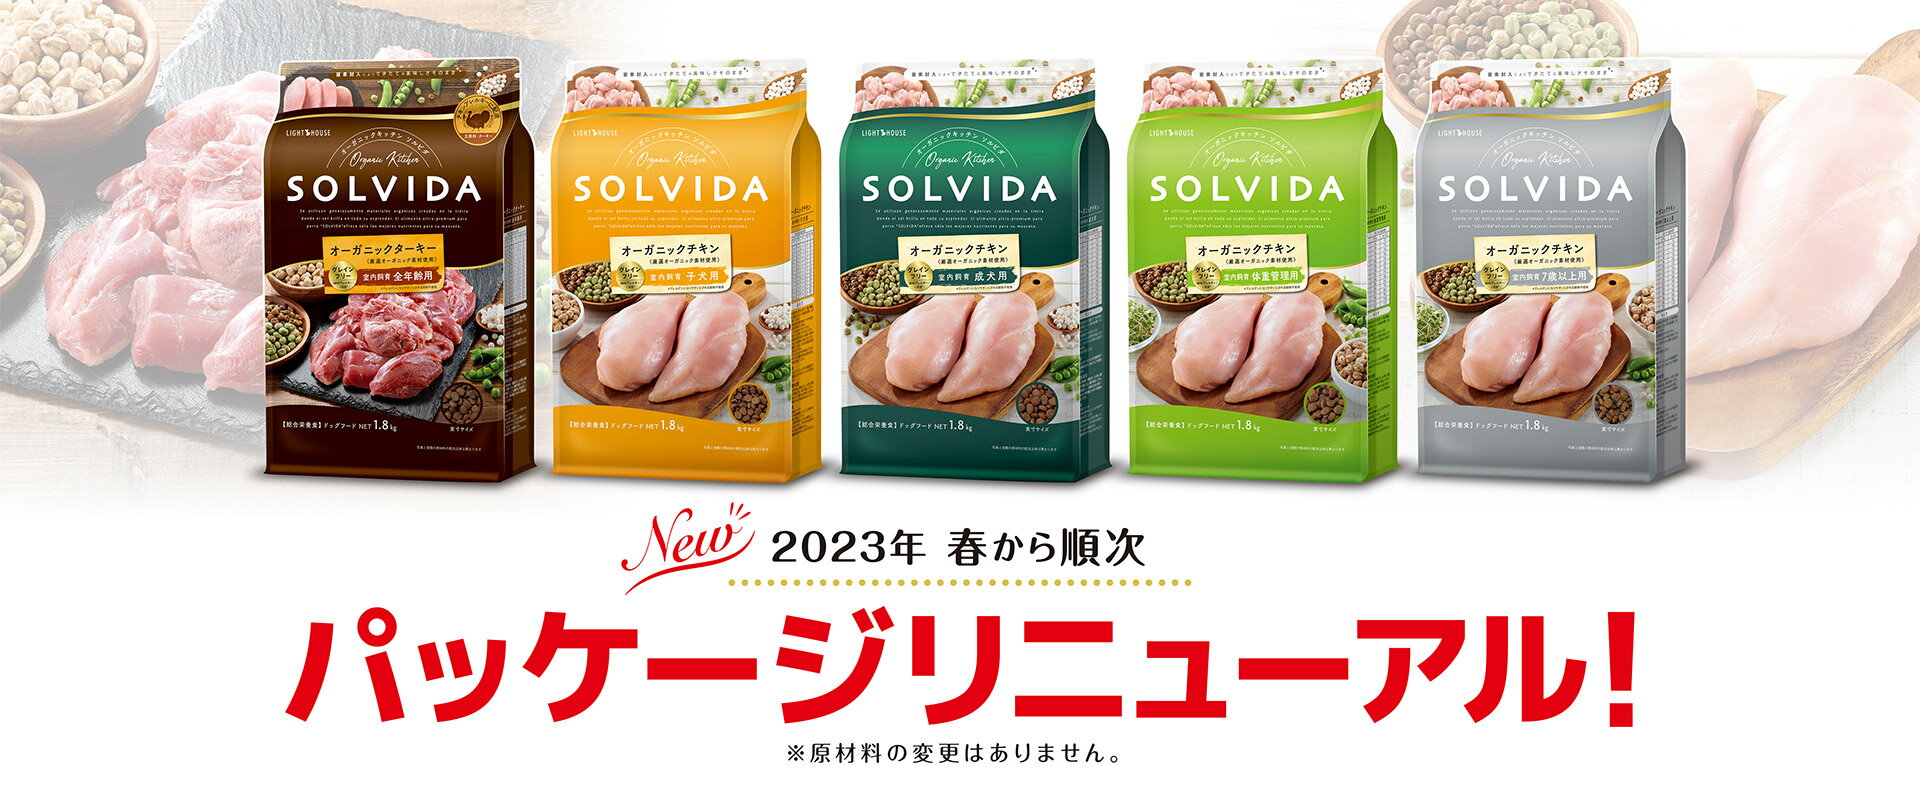 【正規輸入品】ソルビダ グレインフリー チキン 室内飼育 子犬用 5.8kg 2